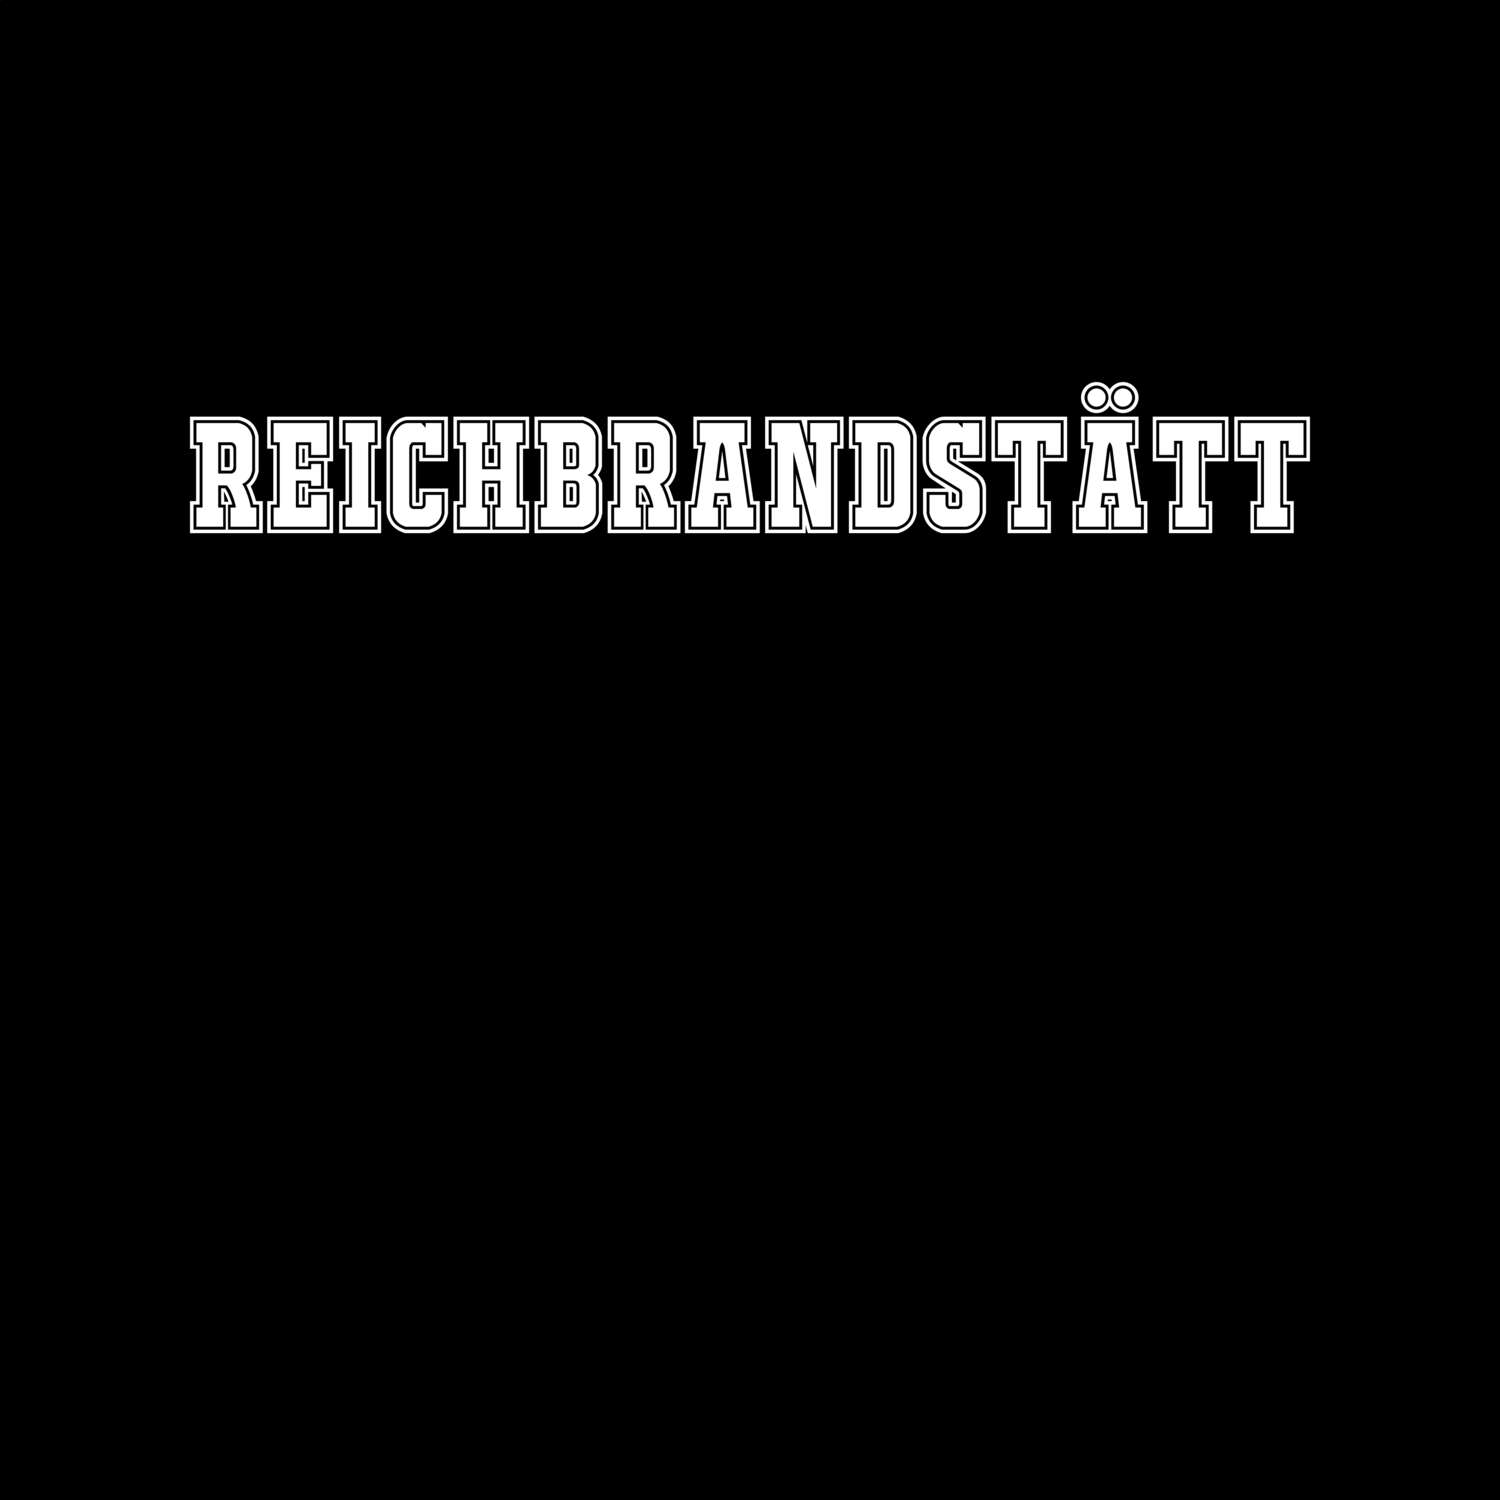 Reichbrandstätt T-Shirt »Classic«